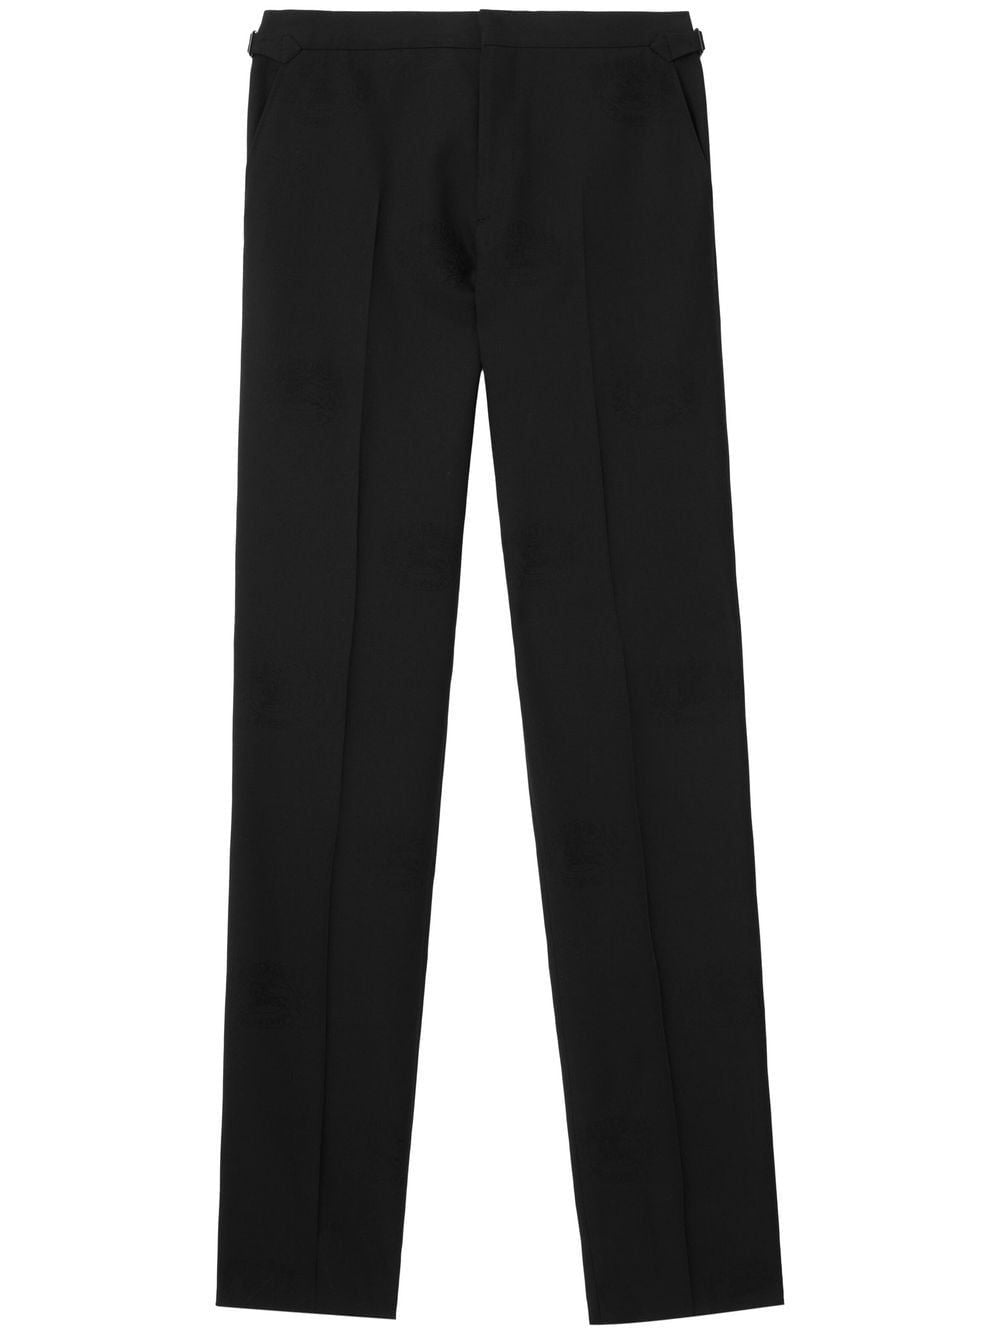 Burberry Men's Black Jacquard Tuxedo Trousers